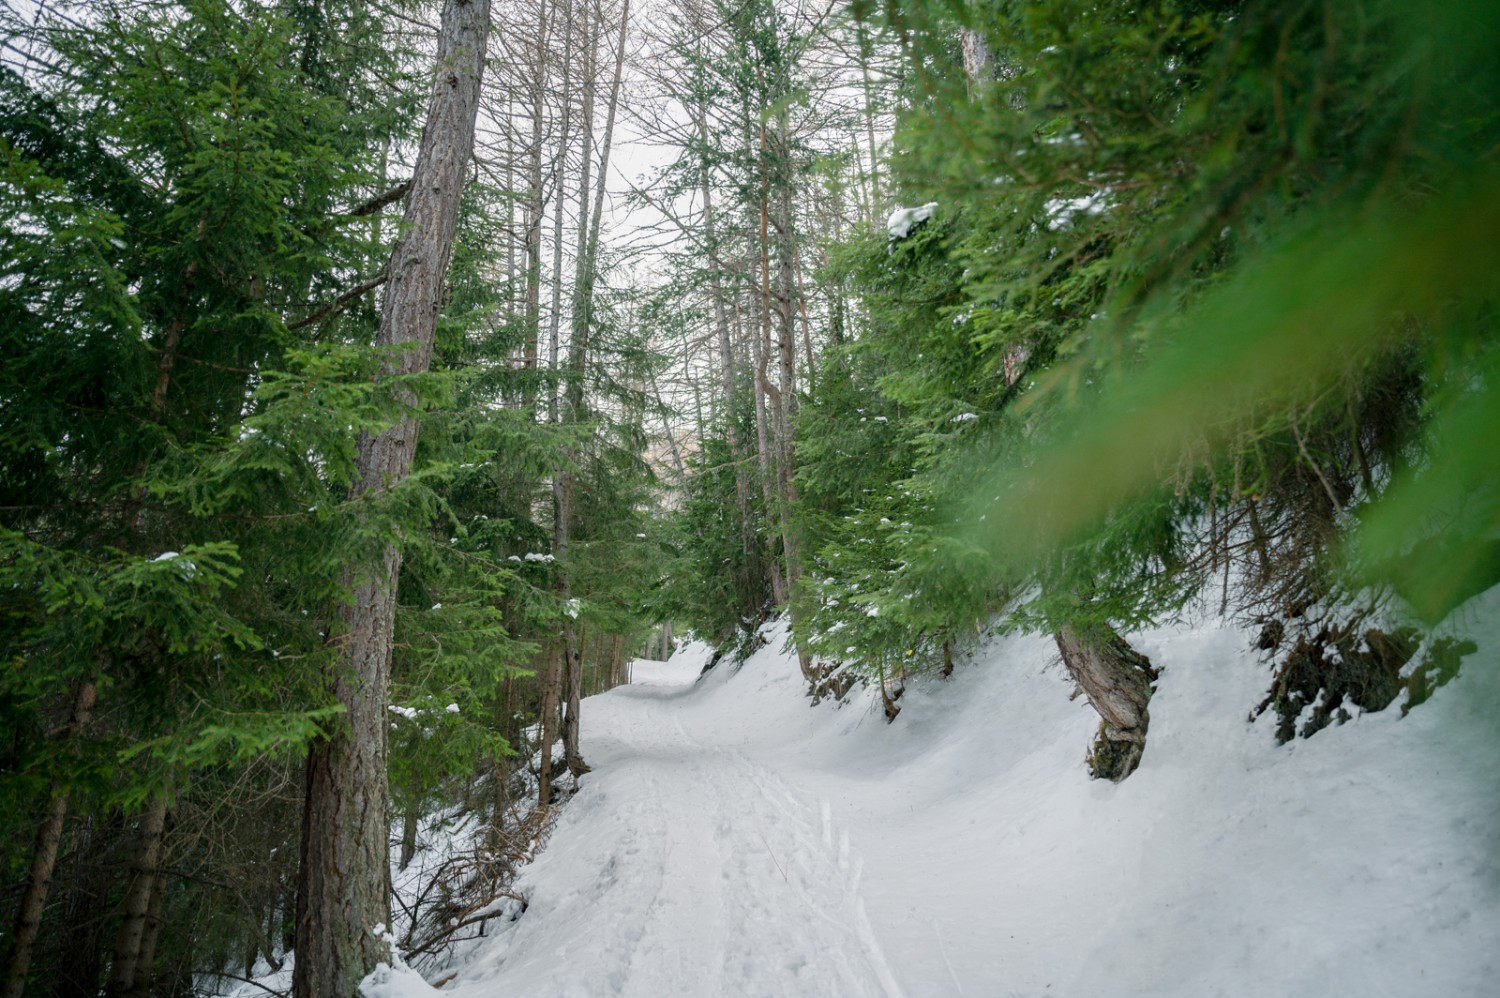 La randonnée en raquettes commence sur un chemin étroit qui traverse un bois. Photo: Jon Guler 